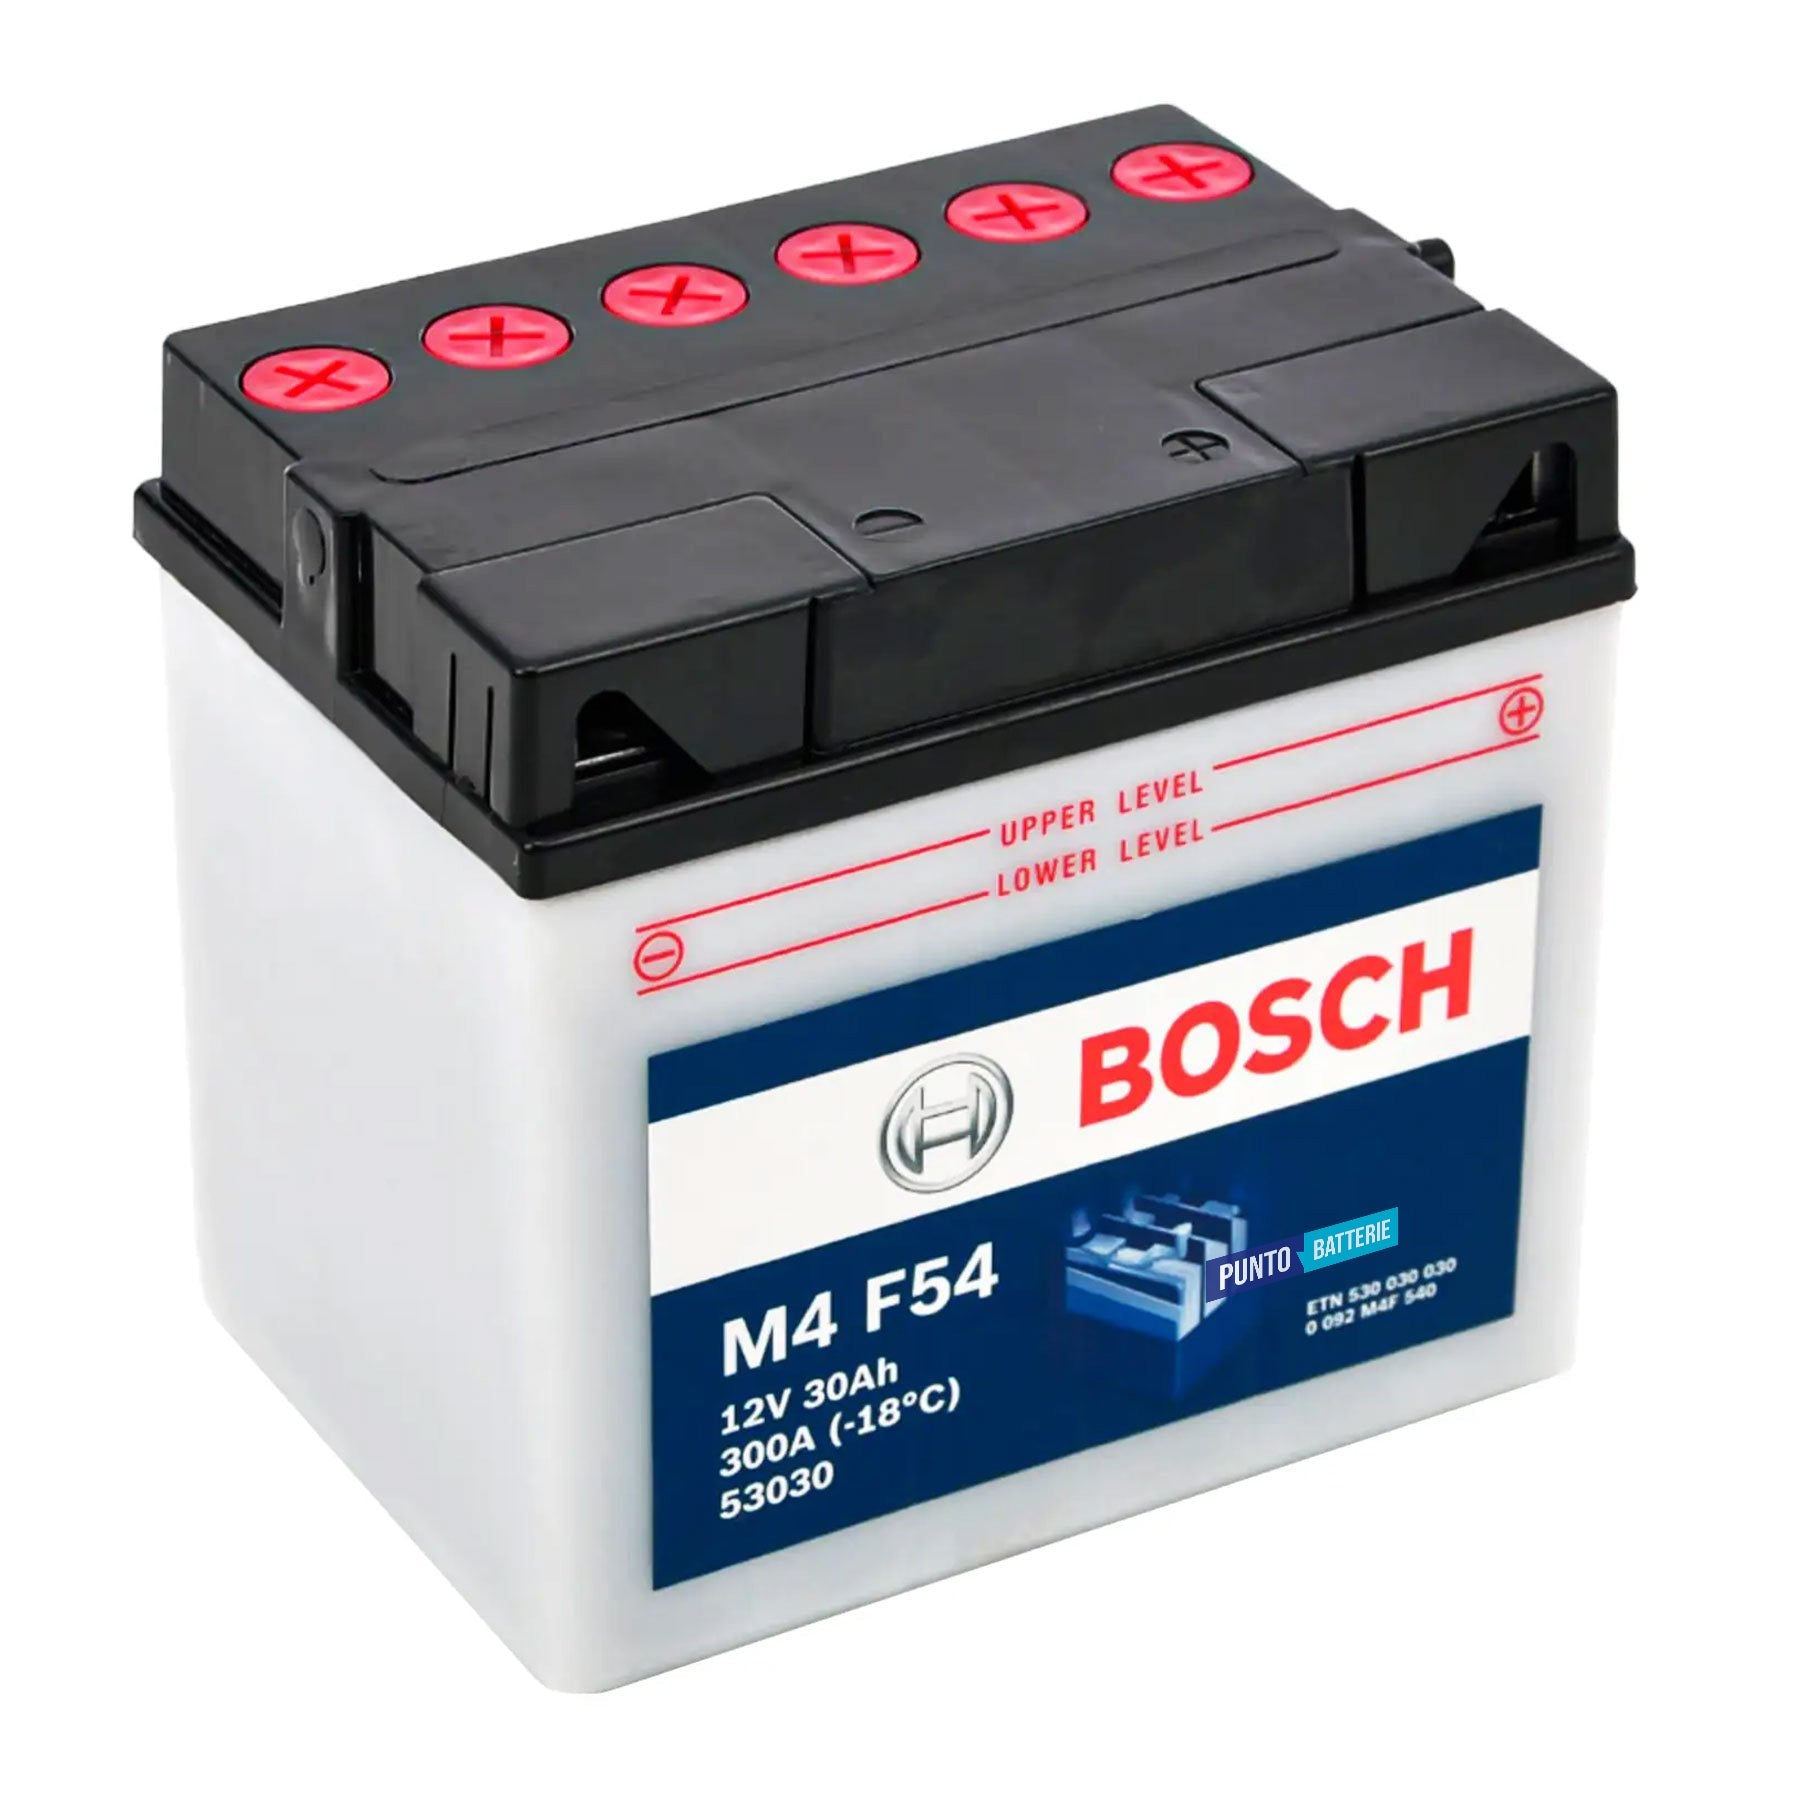 Batteria originale Bosch M4 M4F54, dimensioni 184 x 130 x 170, polo positivo a destra, 12 volt, 30 amperora, 300 ampere. Batteria per moto, scooter e powersport.